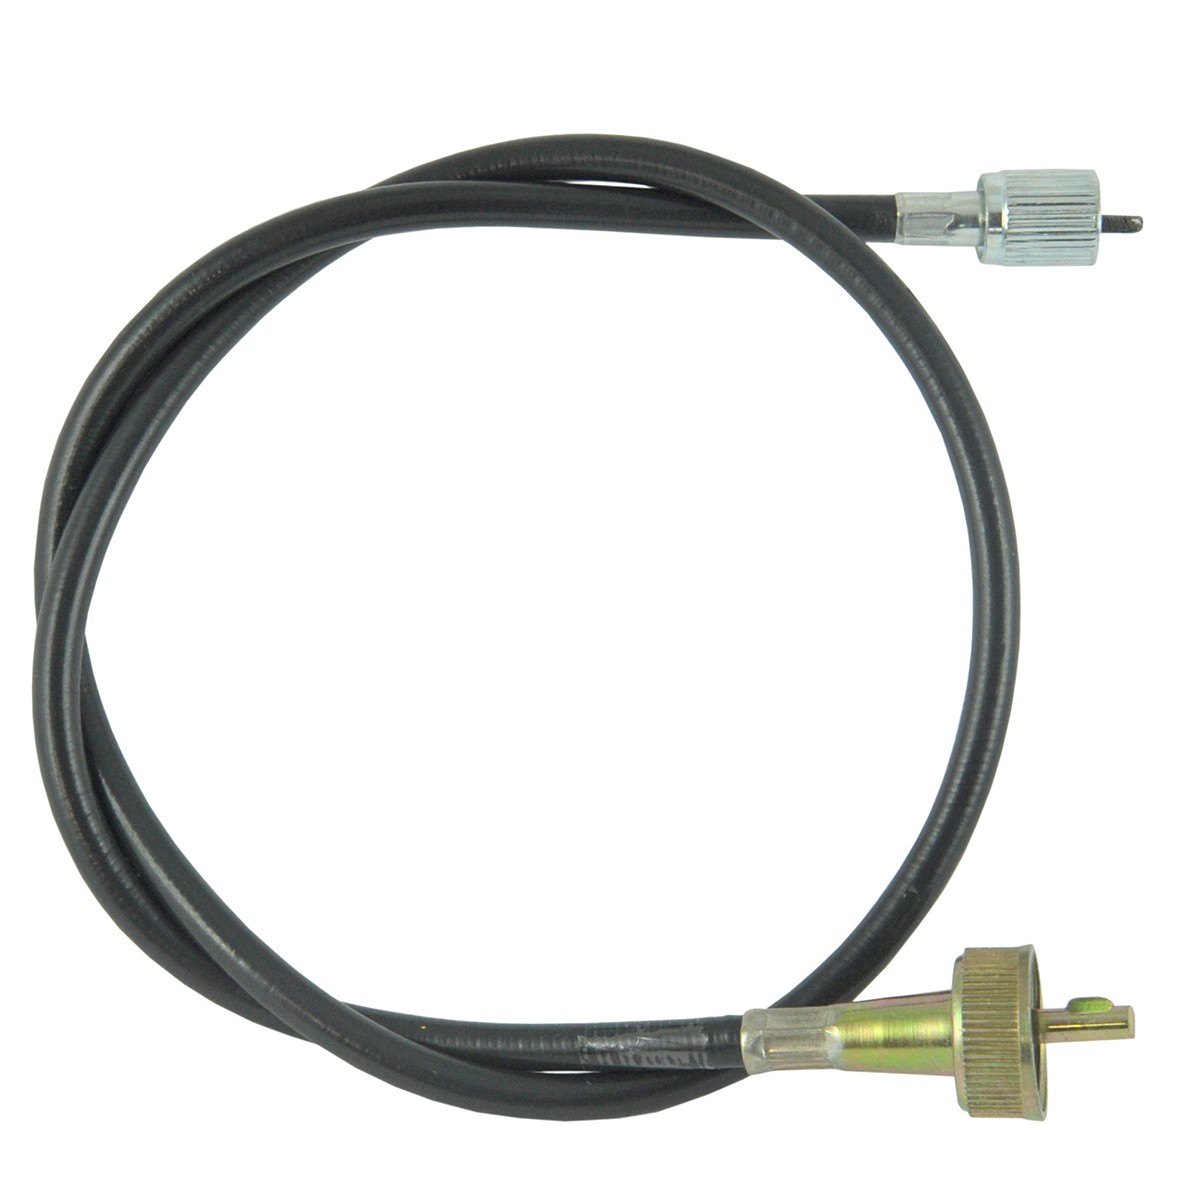 Cable contador / 825 mm / Iseki TE/TL/TS/TU/TX / 1480-621-001-00 / 9-25-107-13